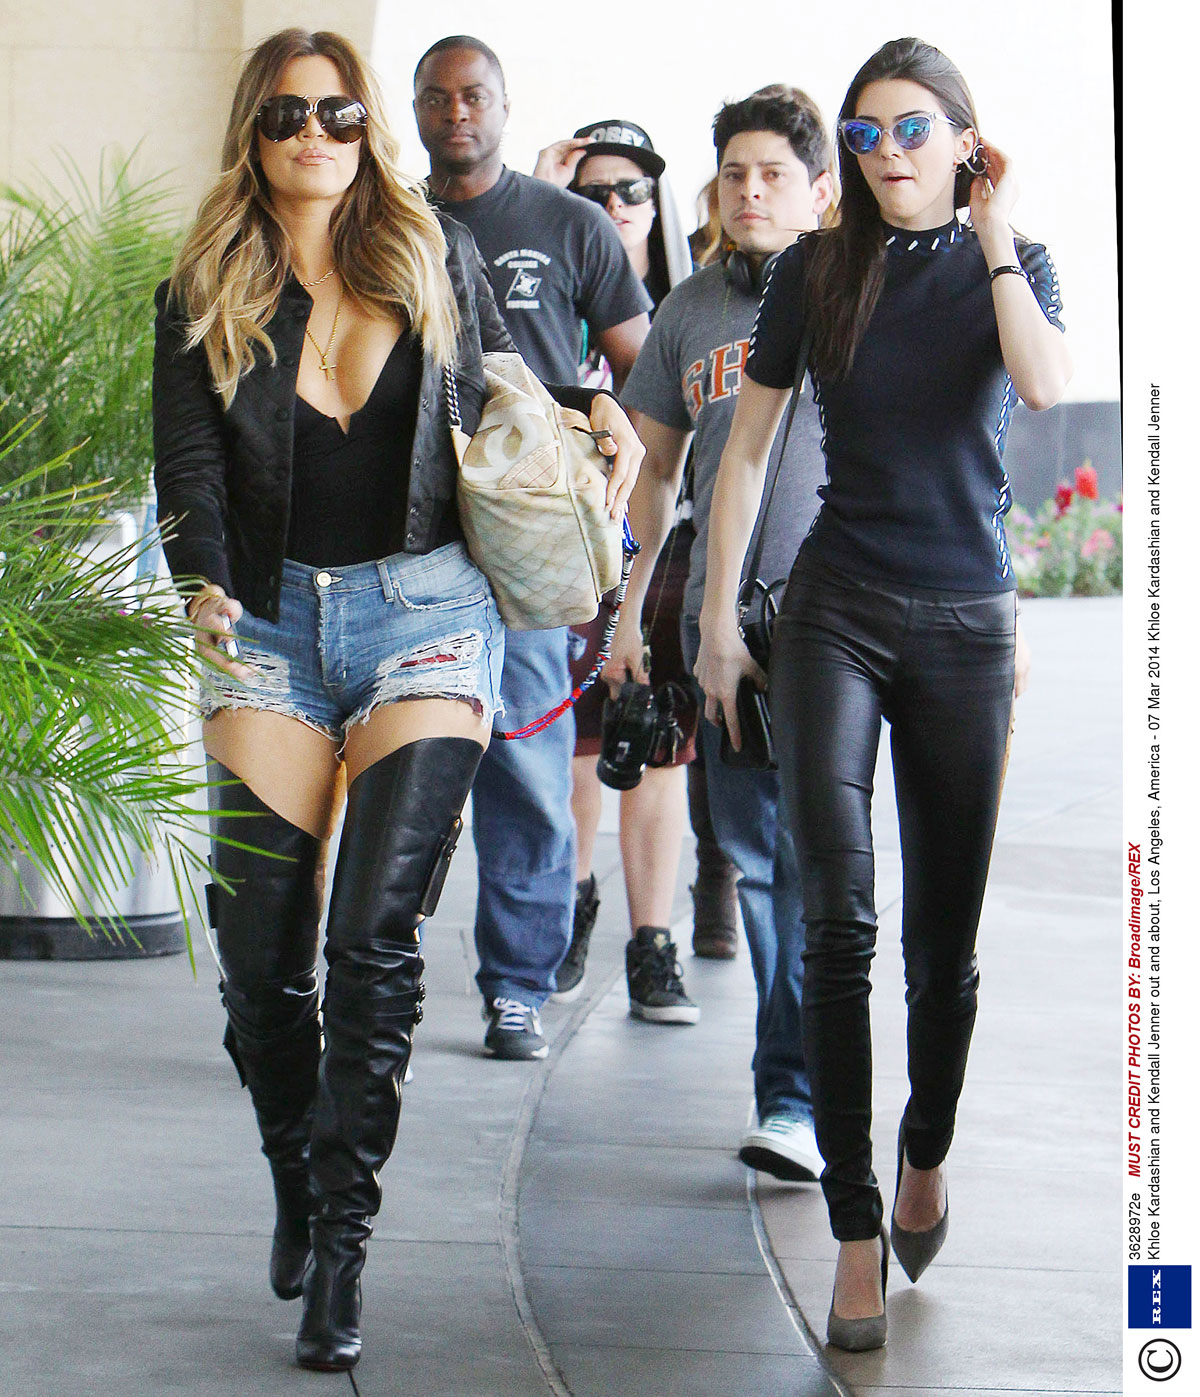 Khloe Kardashian & Kendall Jenner attended a Rick Ross concert